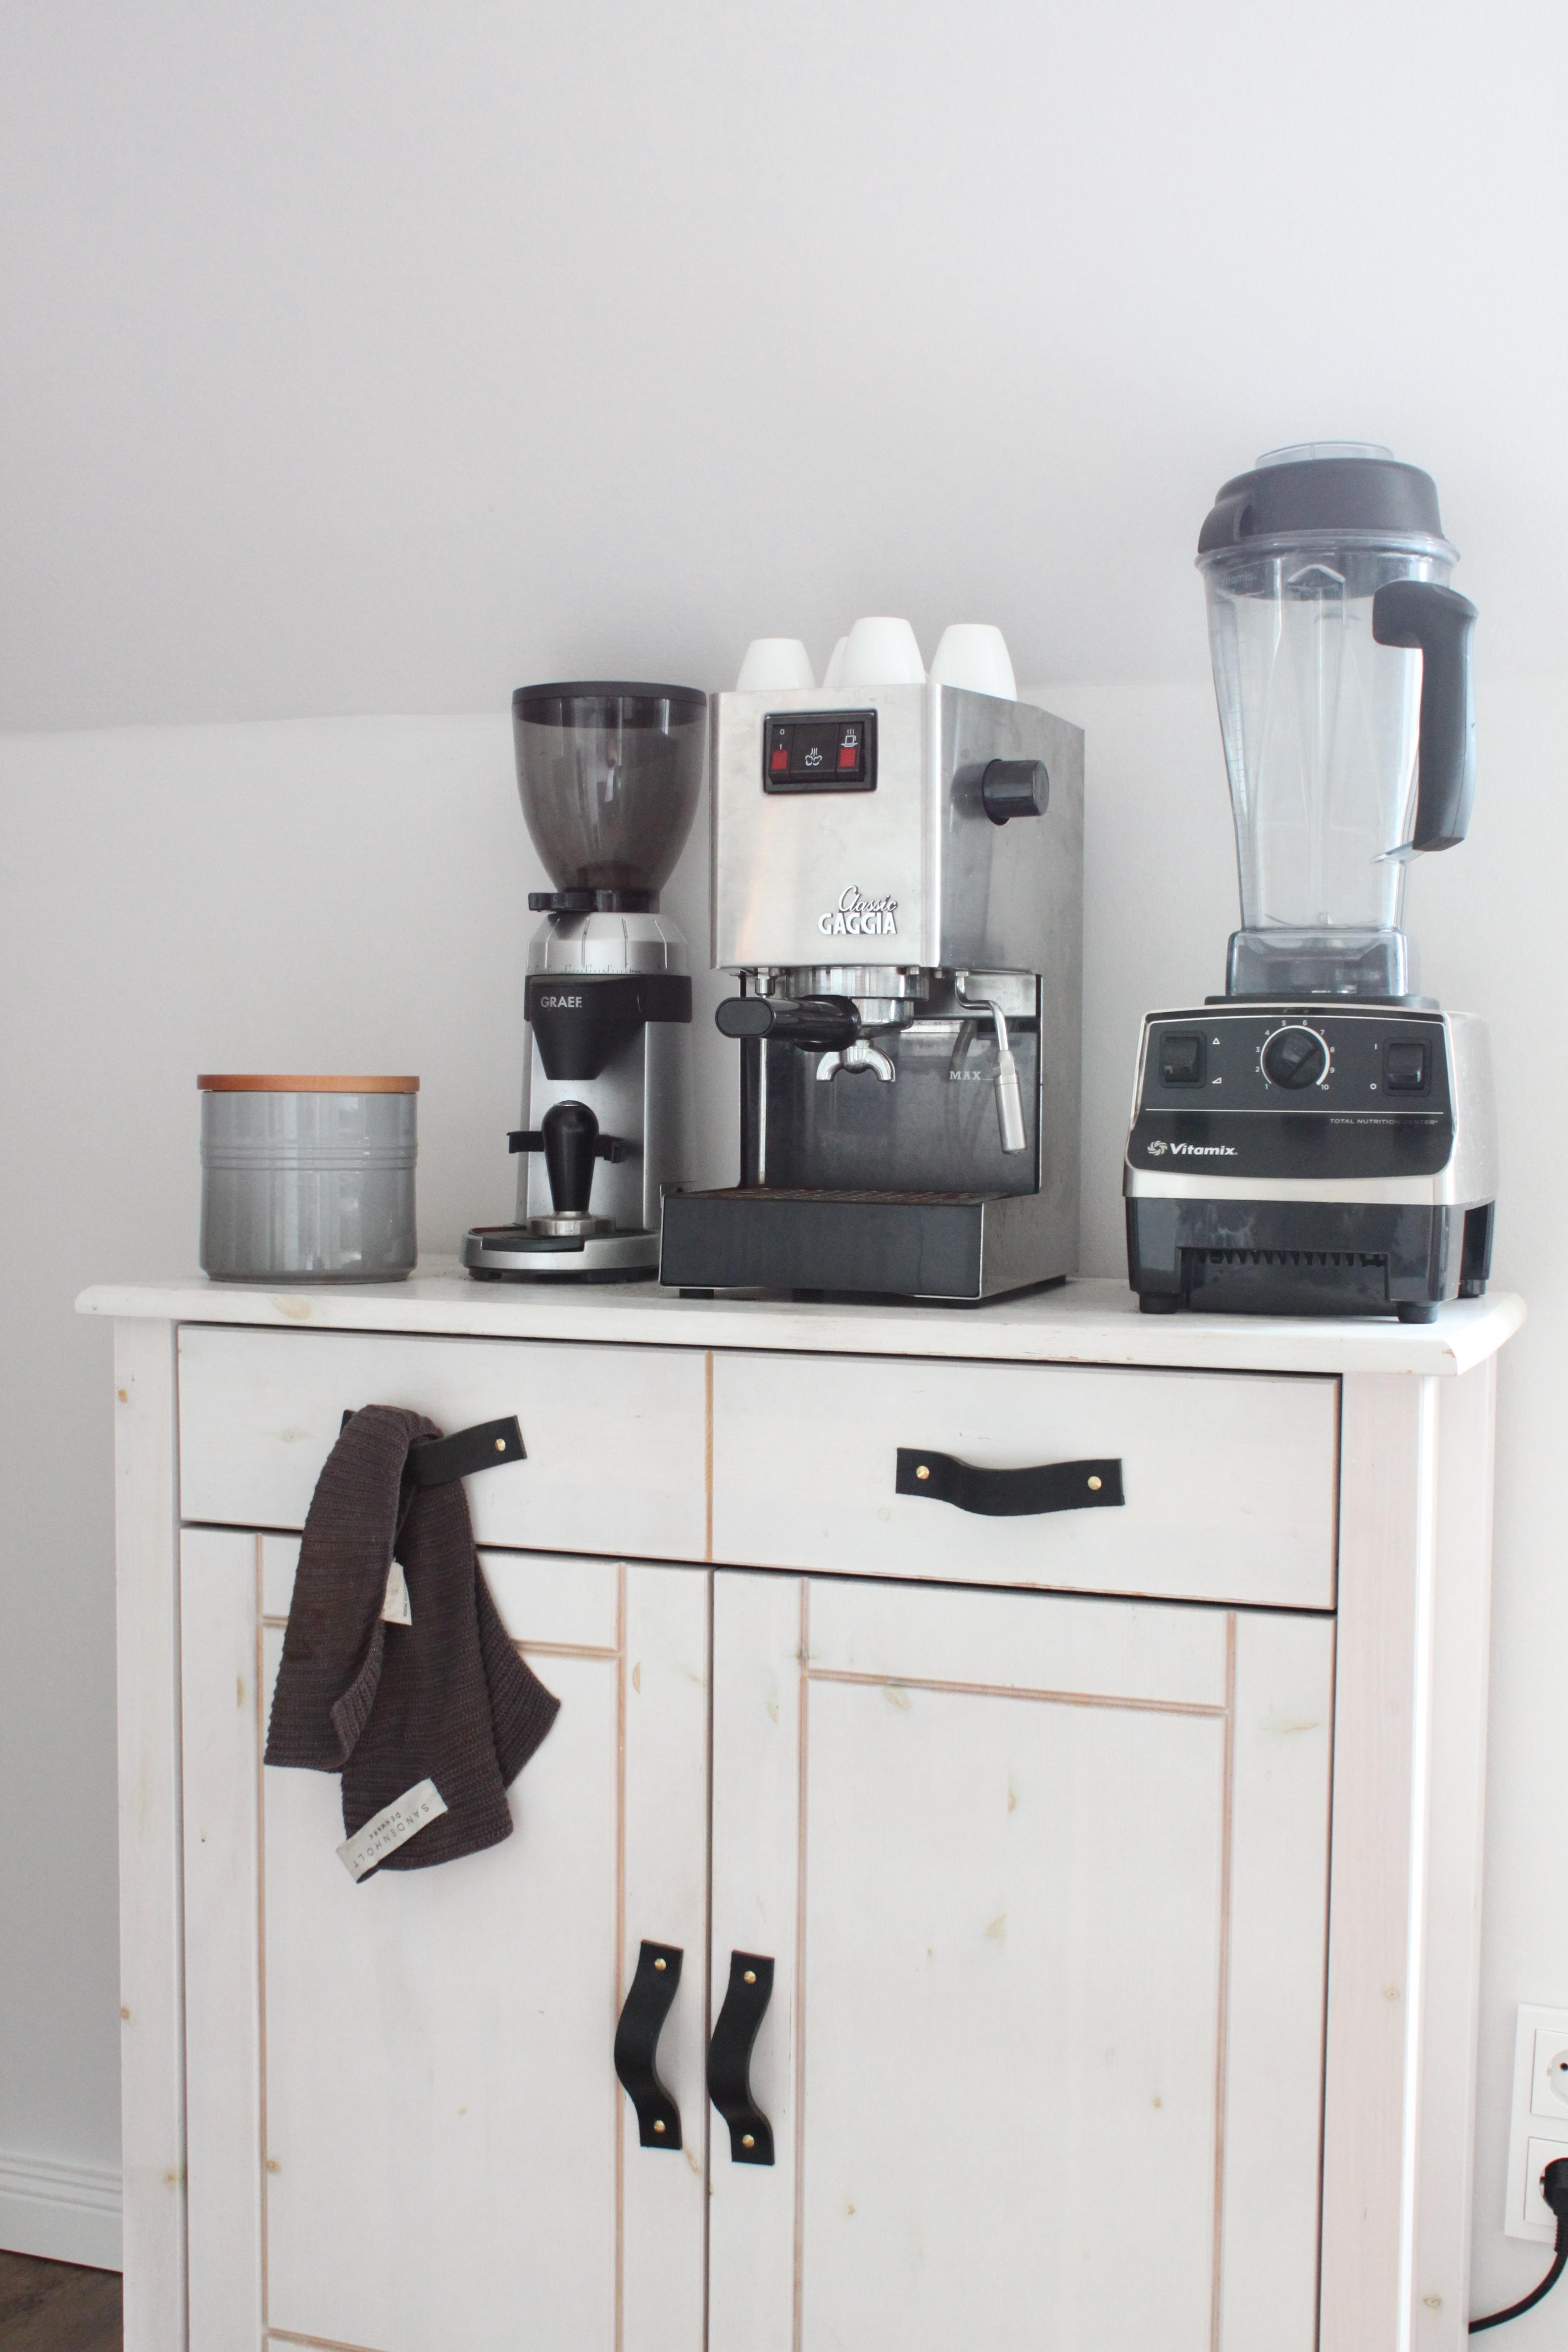 Altes Kaffee-Schränkchen mit selbstgemachten Ledergriffen. #DIY#kaffee#barista#küche#lecruset